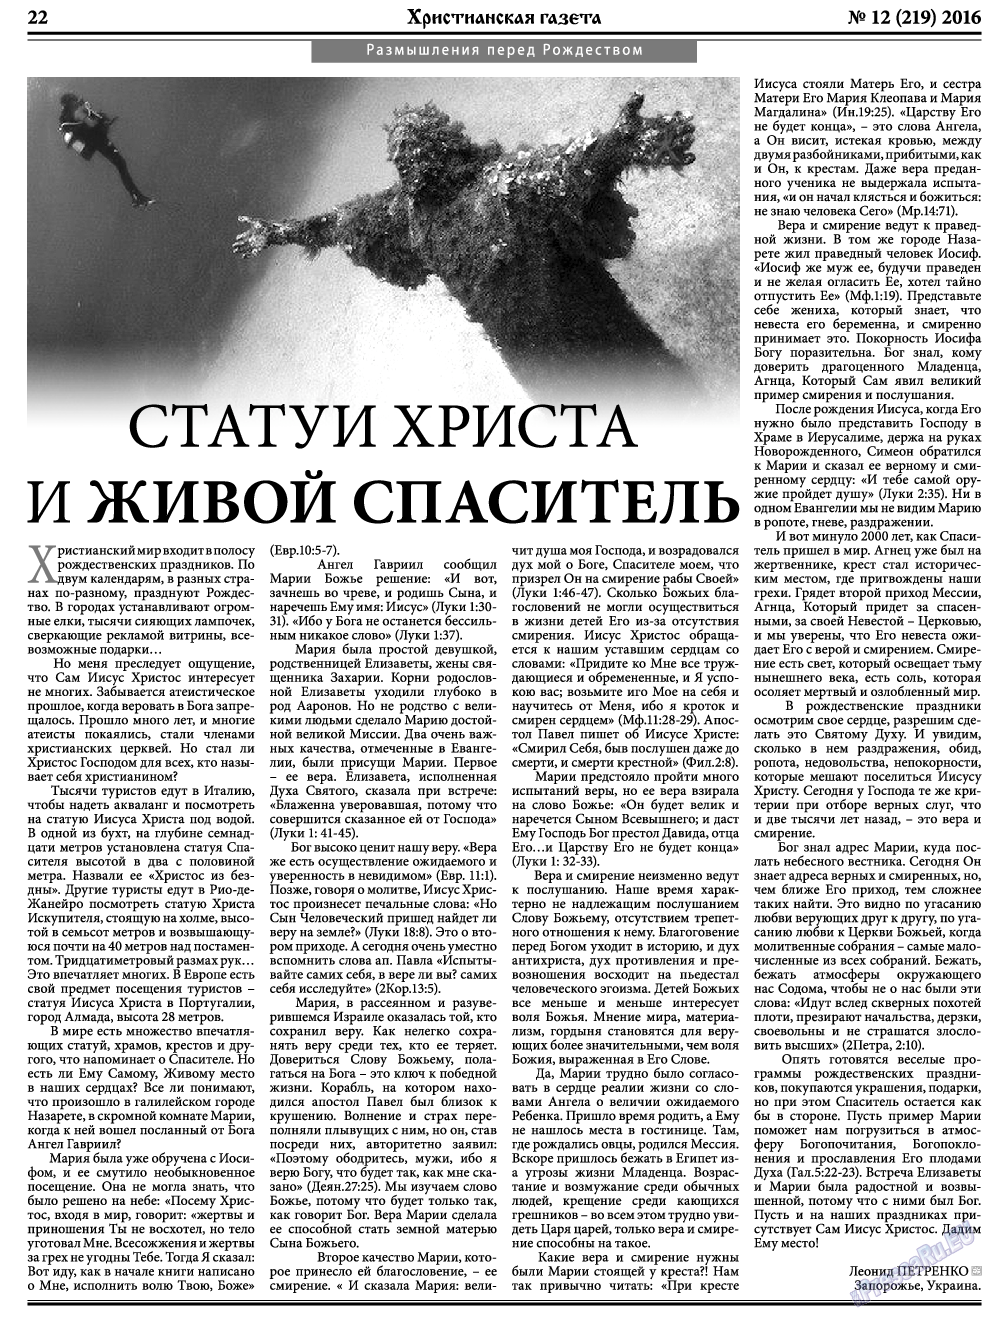 Христианская газета, газета. 2016 №12 стр.30